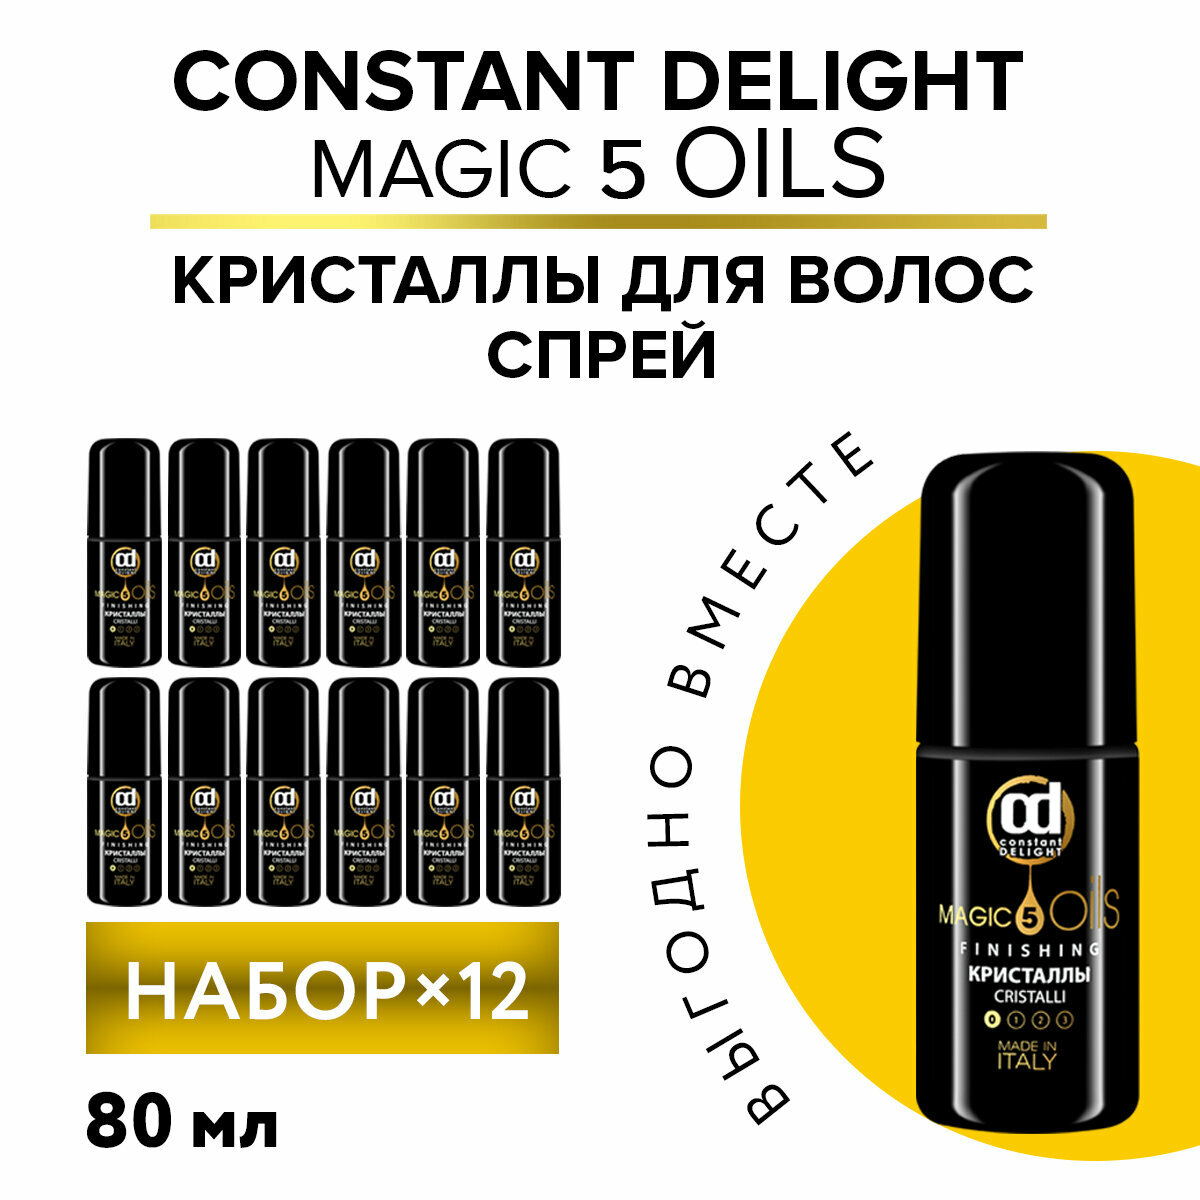 Кристаллы MAGIC 5 OILS без фиксации CONSTANT DELIGHT 80 мл - 12 шт